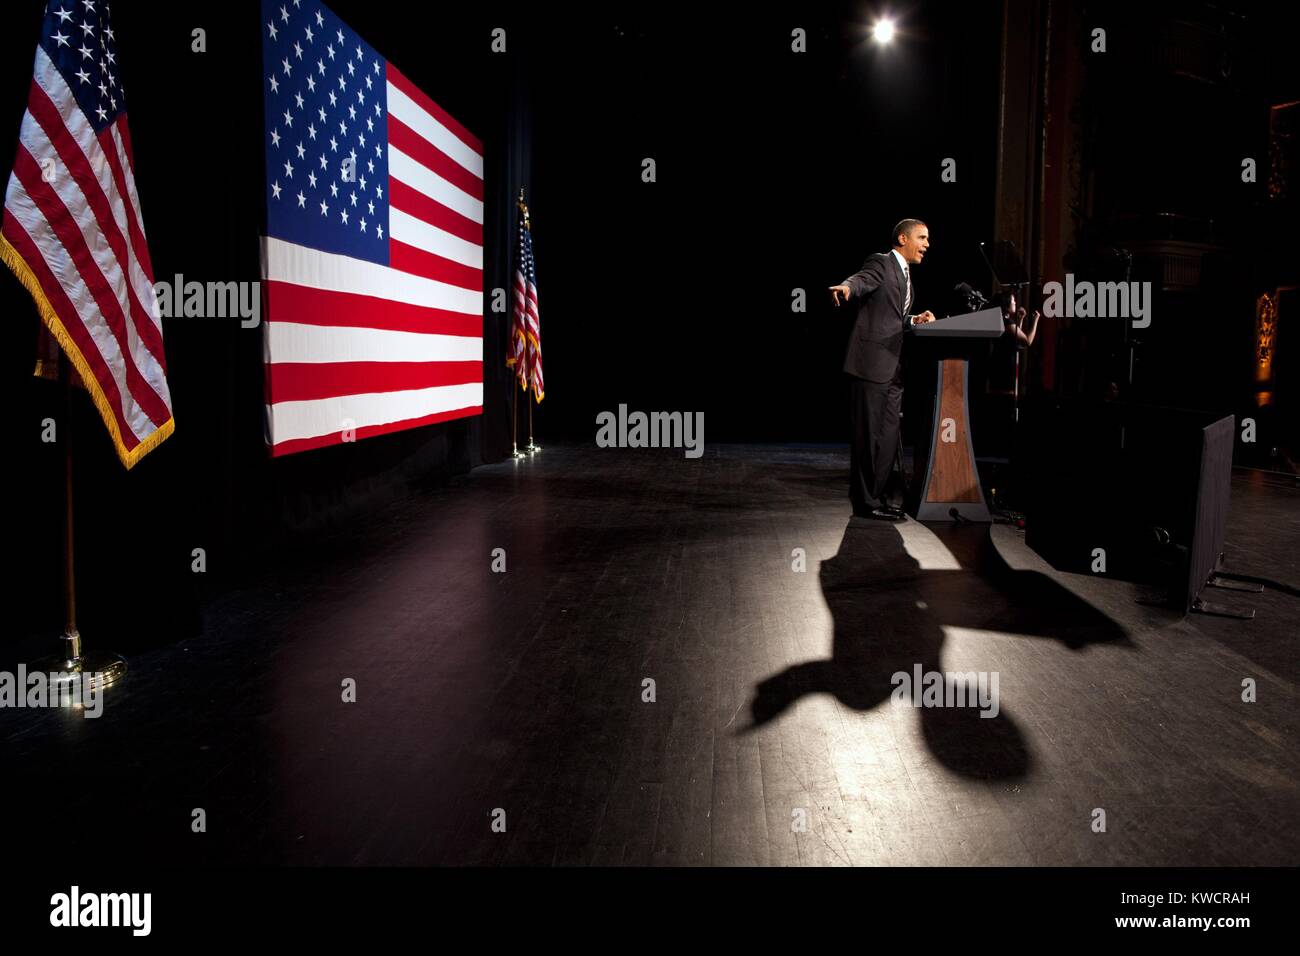 Präsident Barack Obama spricht an der Apollo Theater in New York City, Jan. 19, 2012. Erschien er an eine Kampagne Benefizkonzert mit der Überschrift von Al Green und India Arie. (BSLOC 2015 3 15) Stockfoto